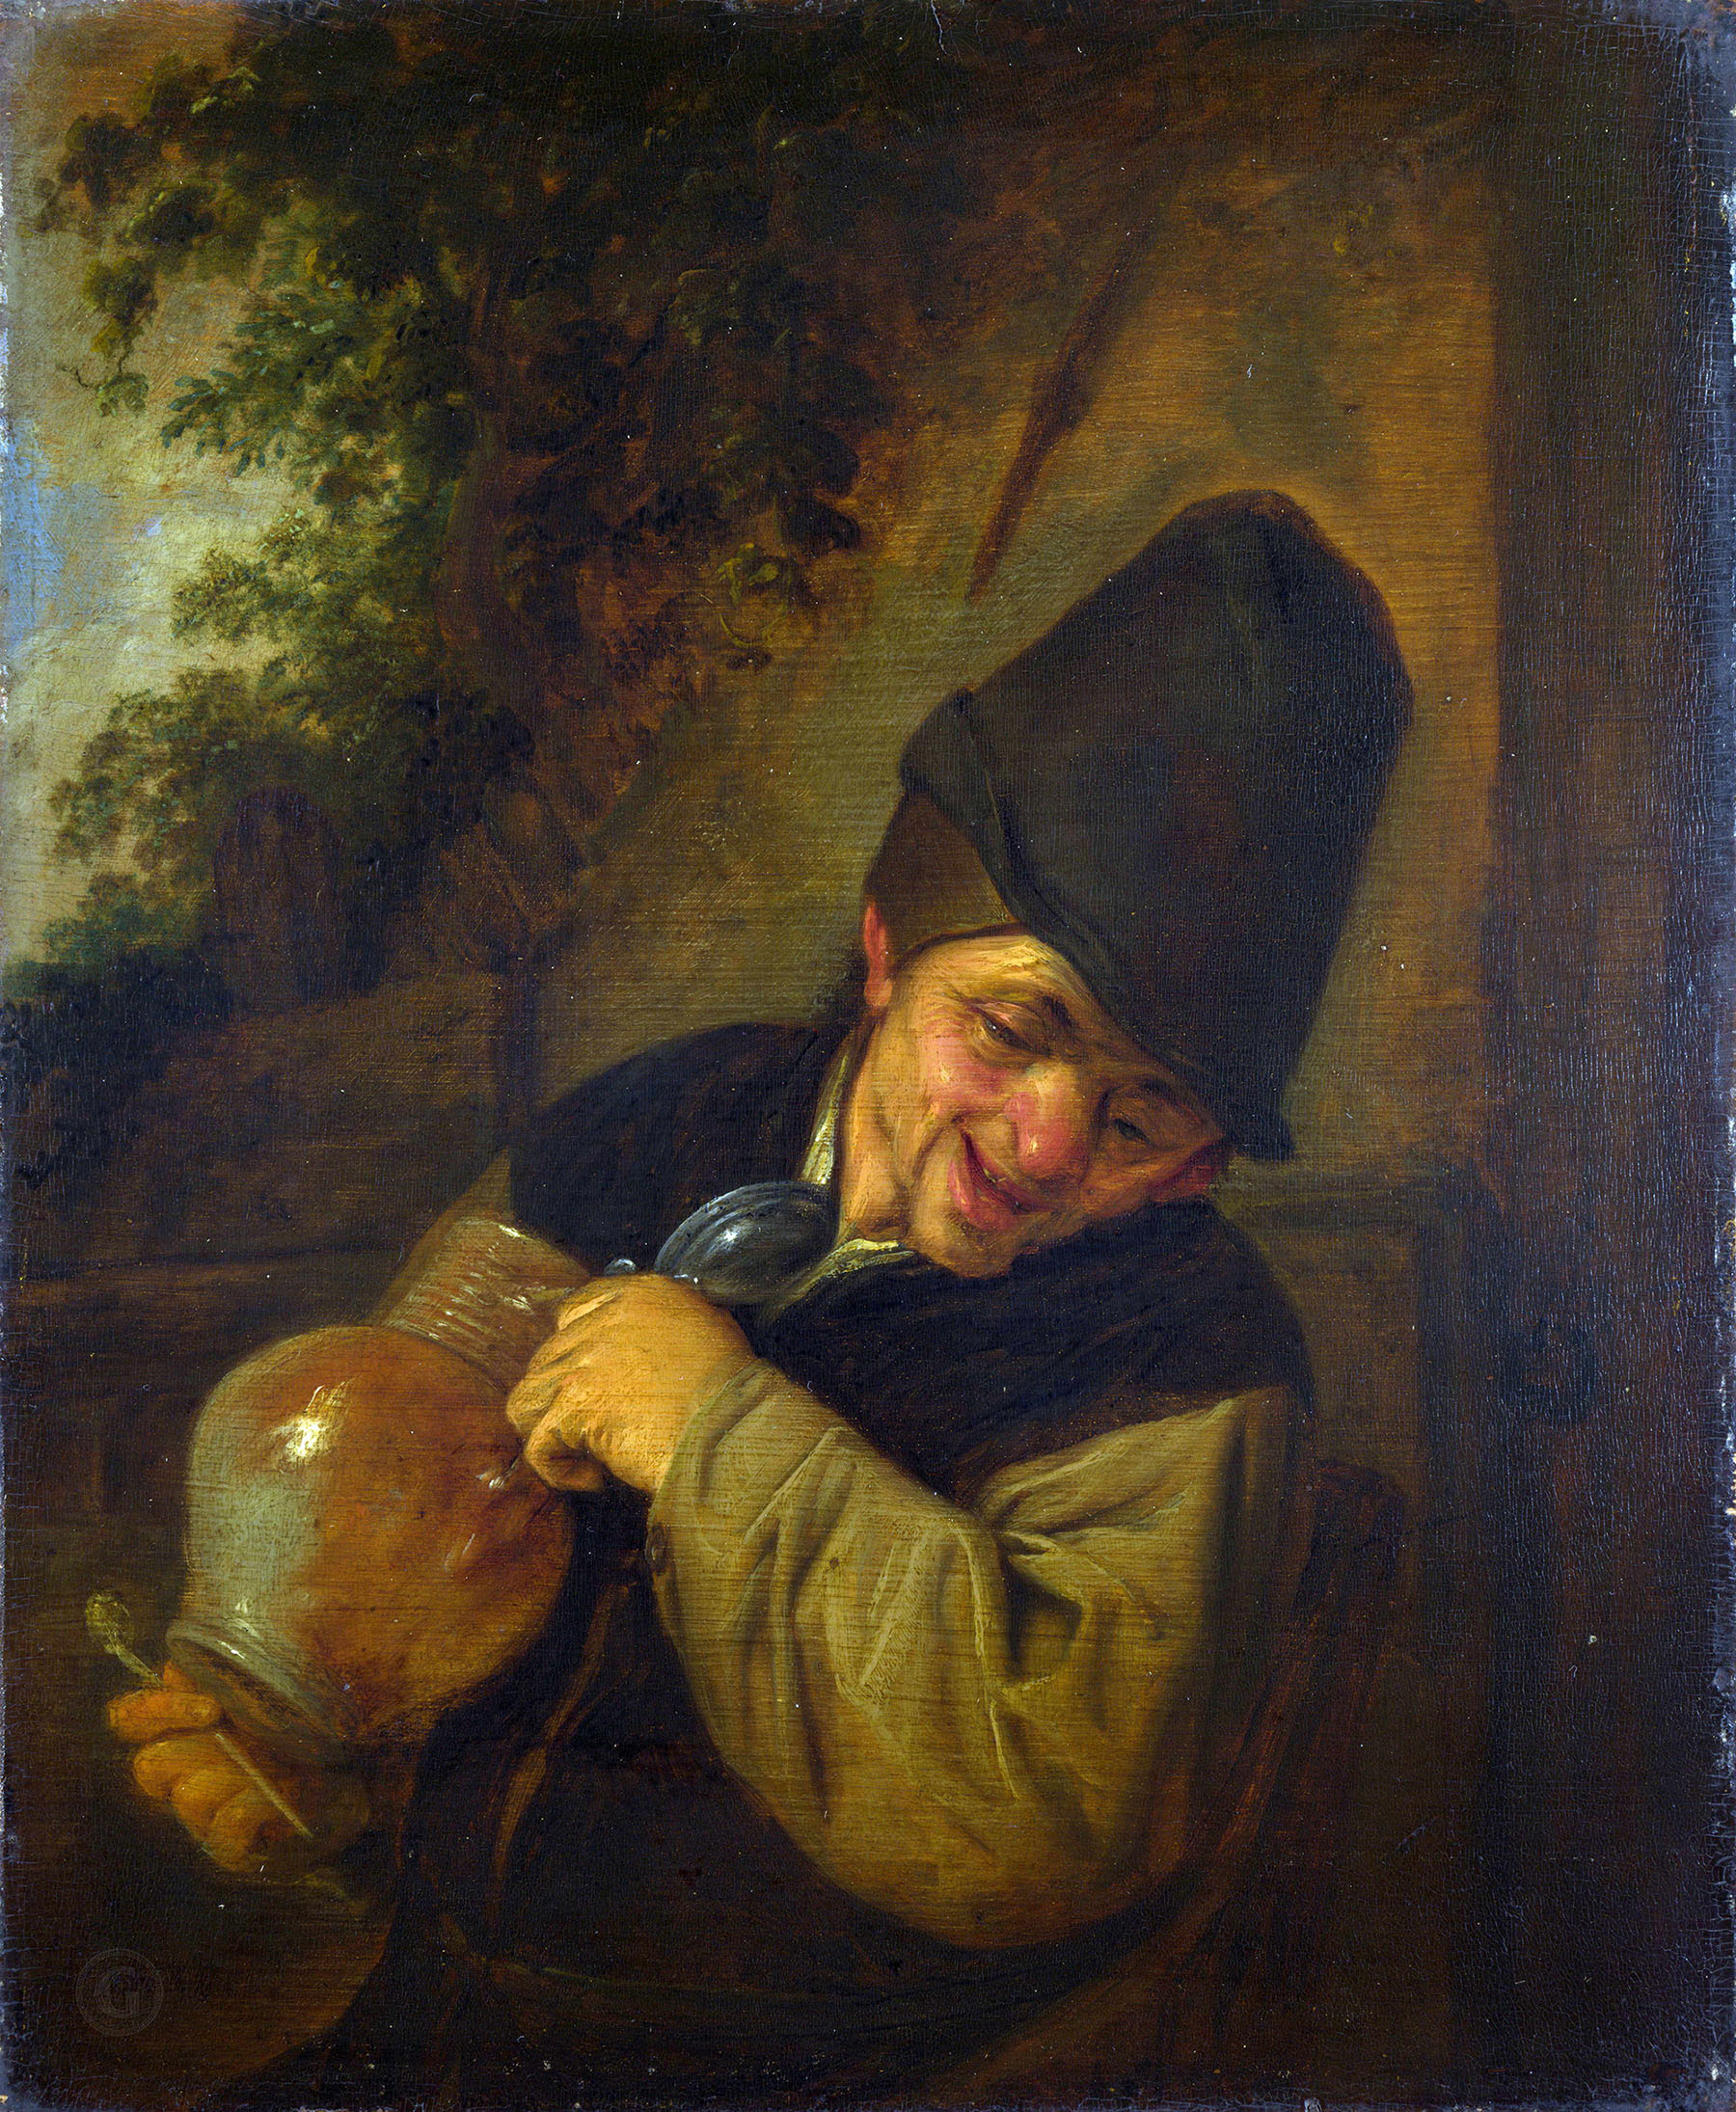 Адриан ван Остаде. "Крестьянин с кувшином и трубкой". 1650-1655. Британская национальная галерея, Лондон.